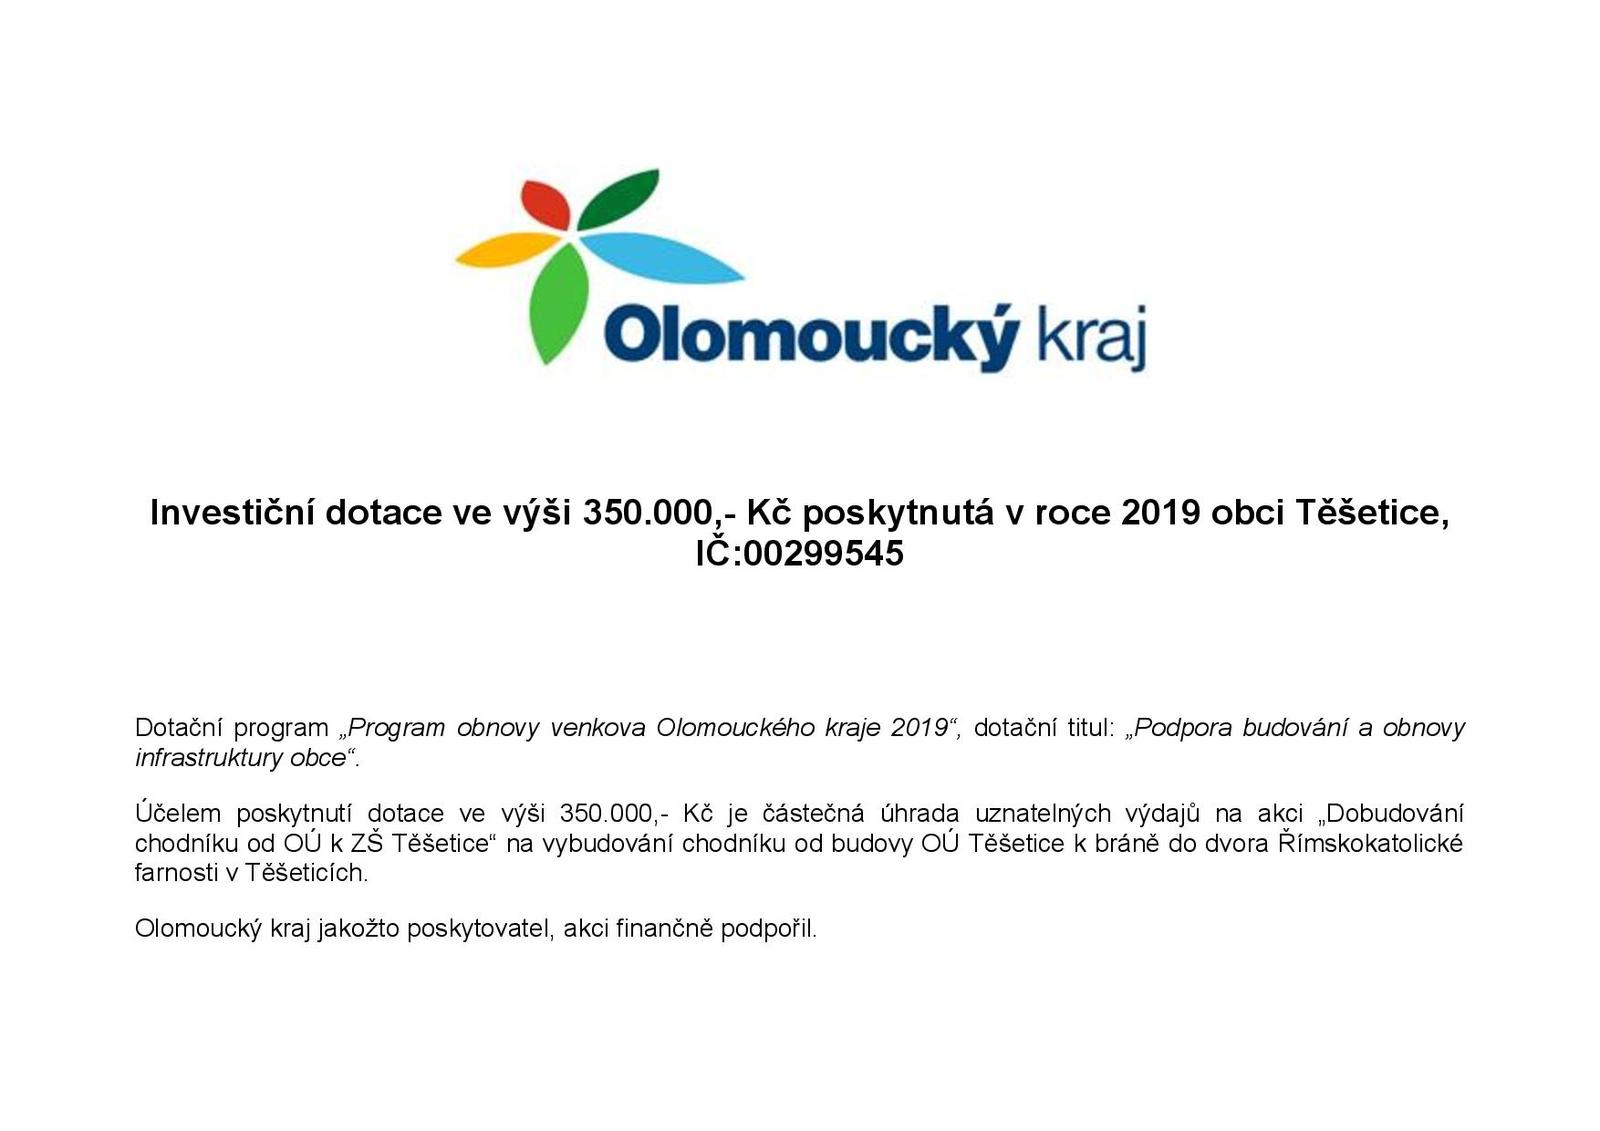 Olomoucký kraj - Investiční dotace ve výši 350 000 Kč poskytnutá v roce 2019 obci Těšetice